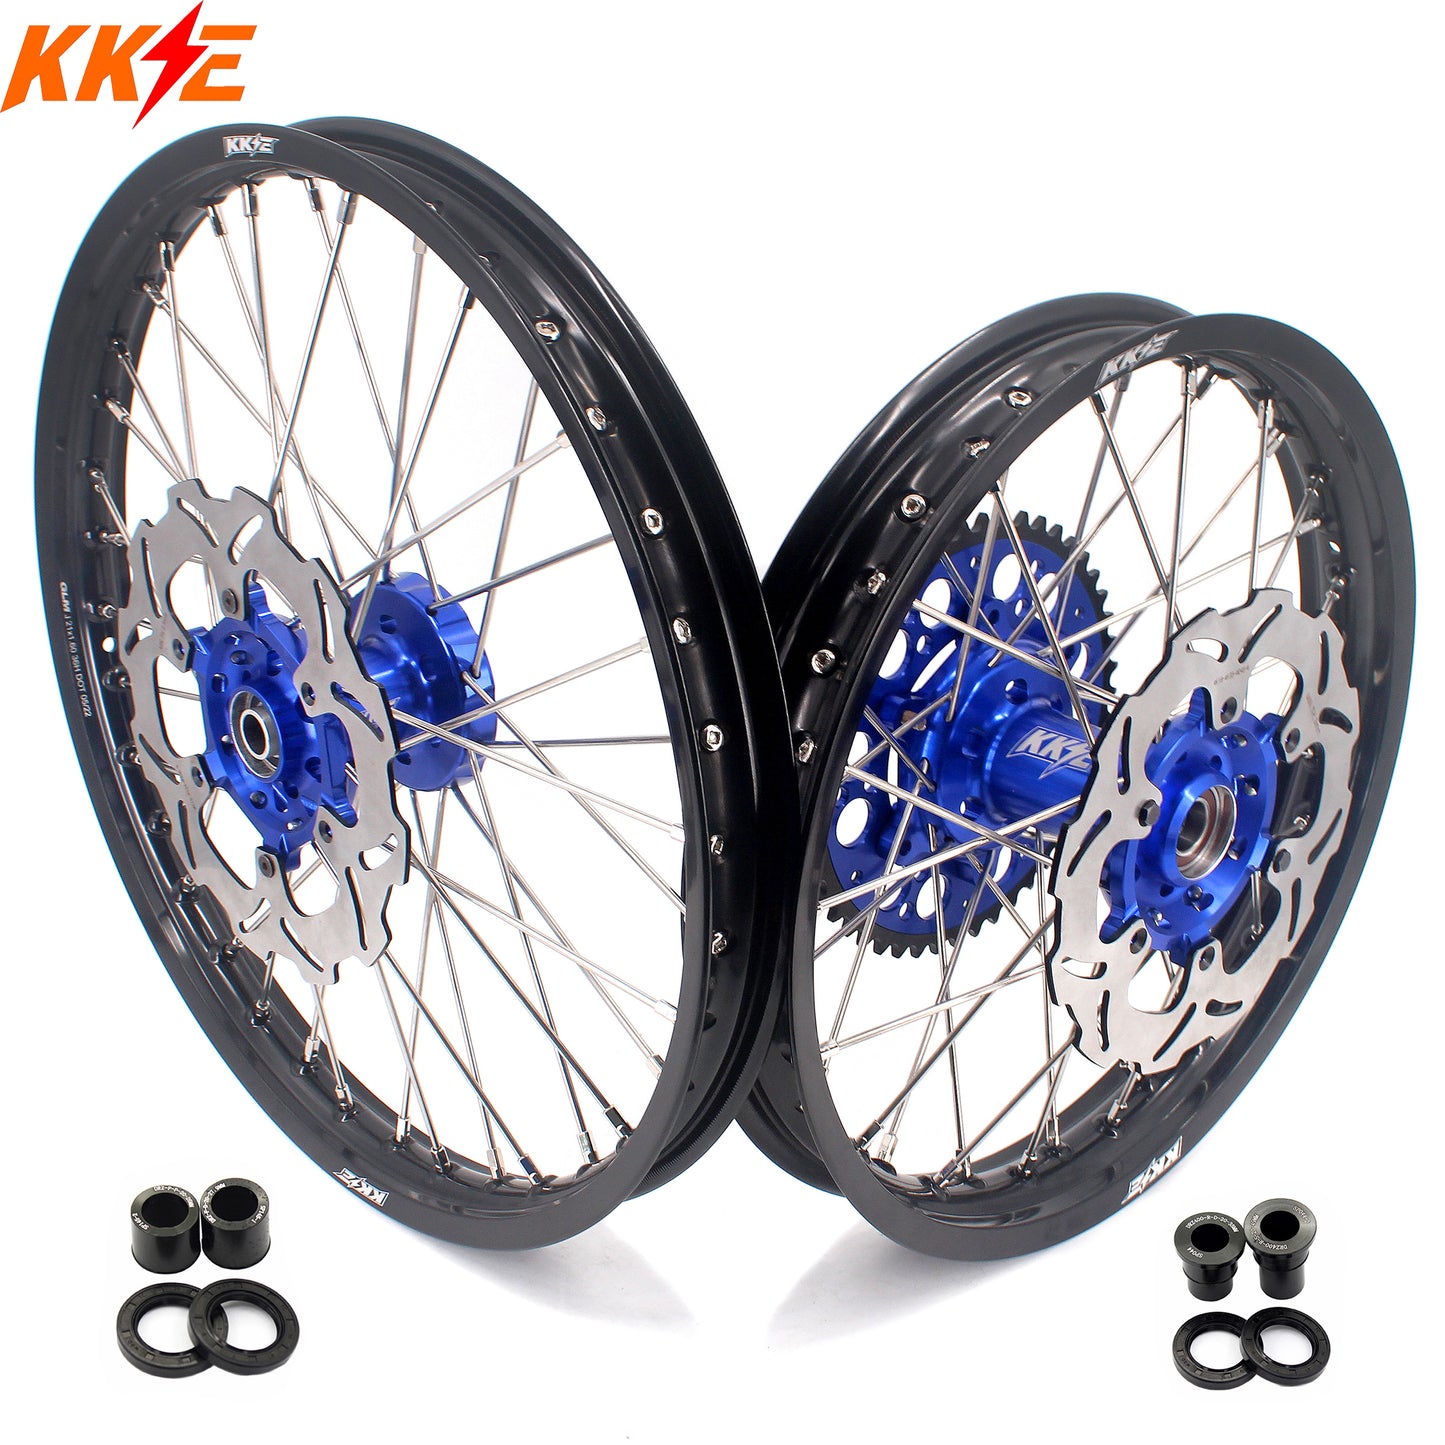 KKE 21/18 Dirtbike Spoke Alloy Wheels For SUZUKI DRZ400 DRZ400E DRZ400S